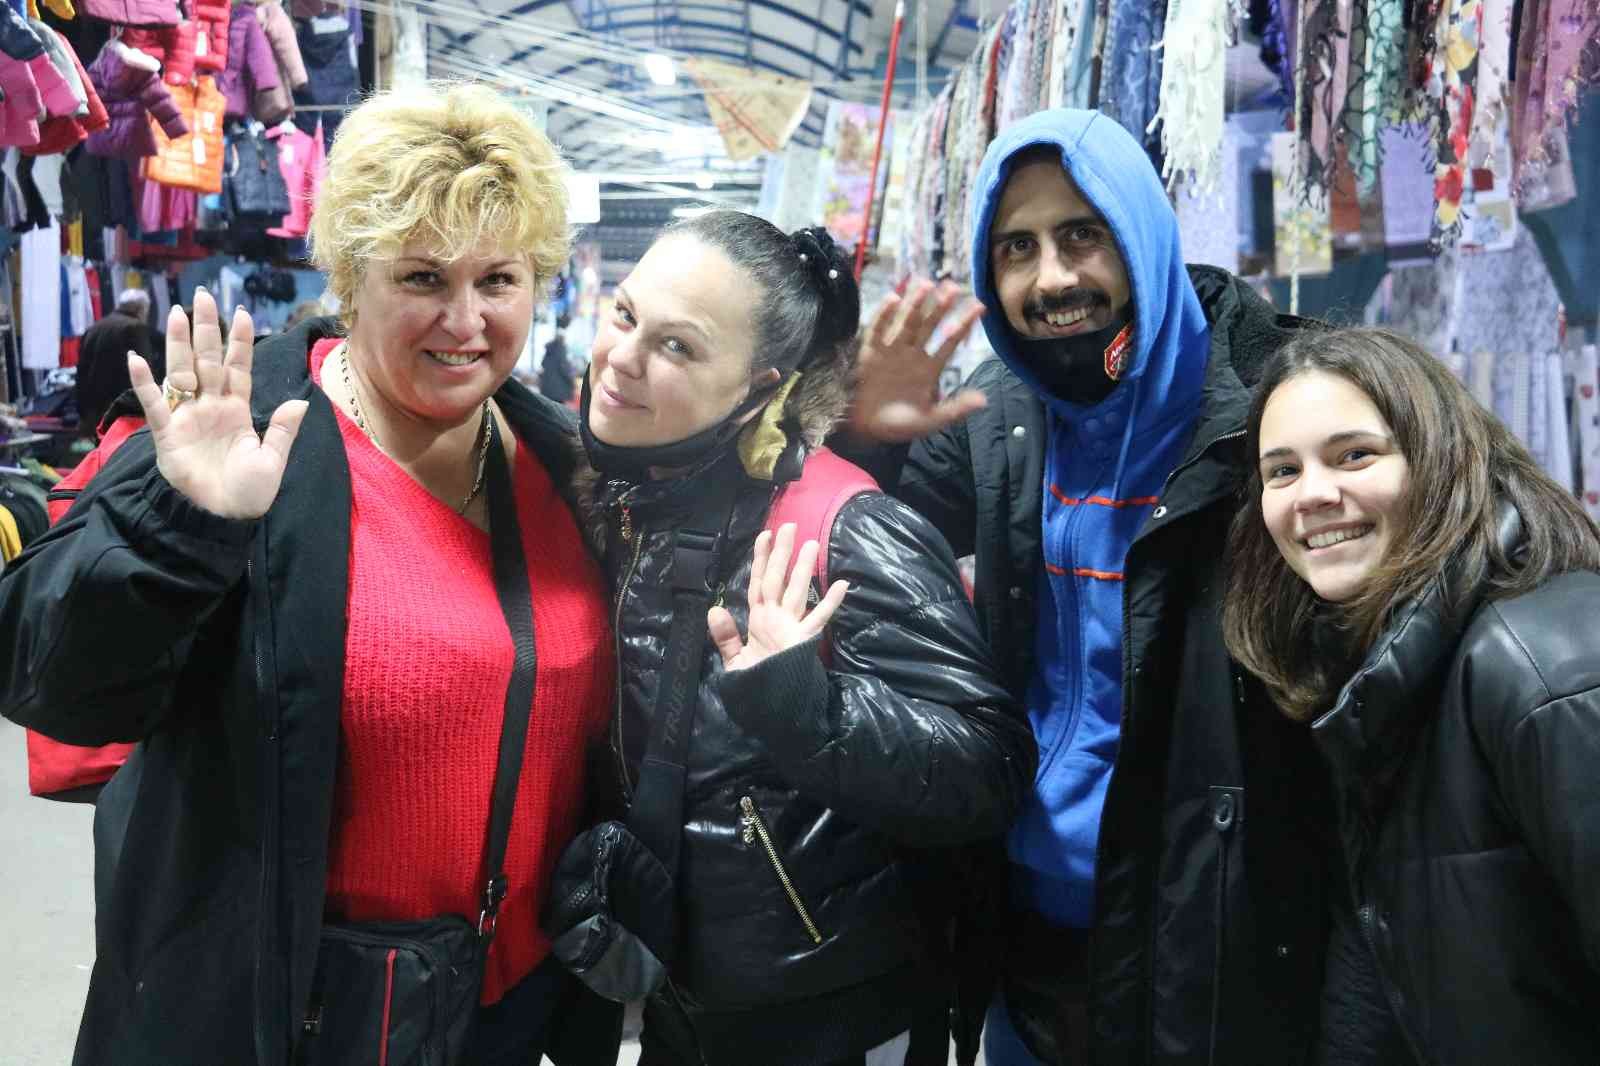 Bulgaristan’dan 1 milyon turist Edirne’ye alışverişe geldi #edirne